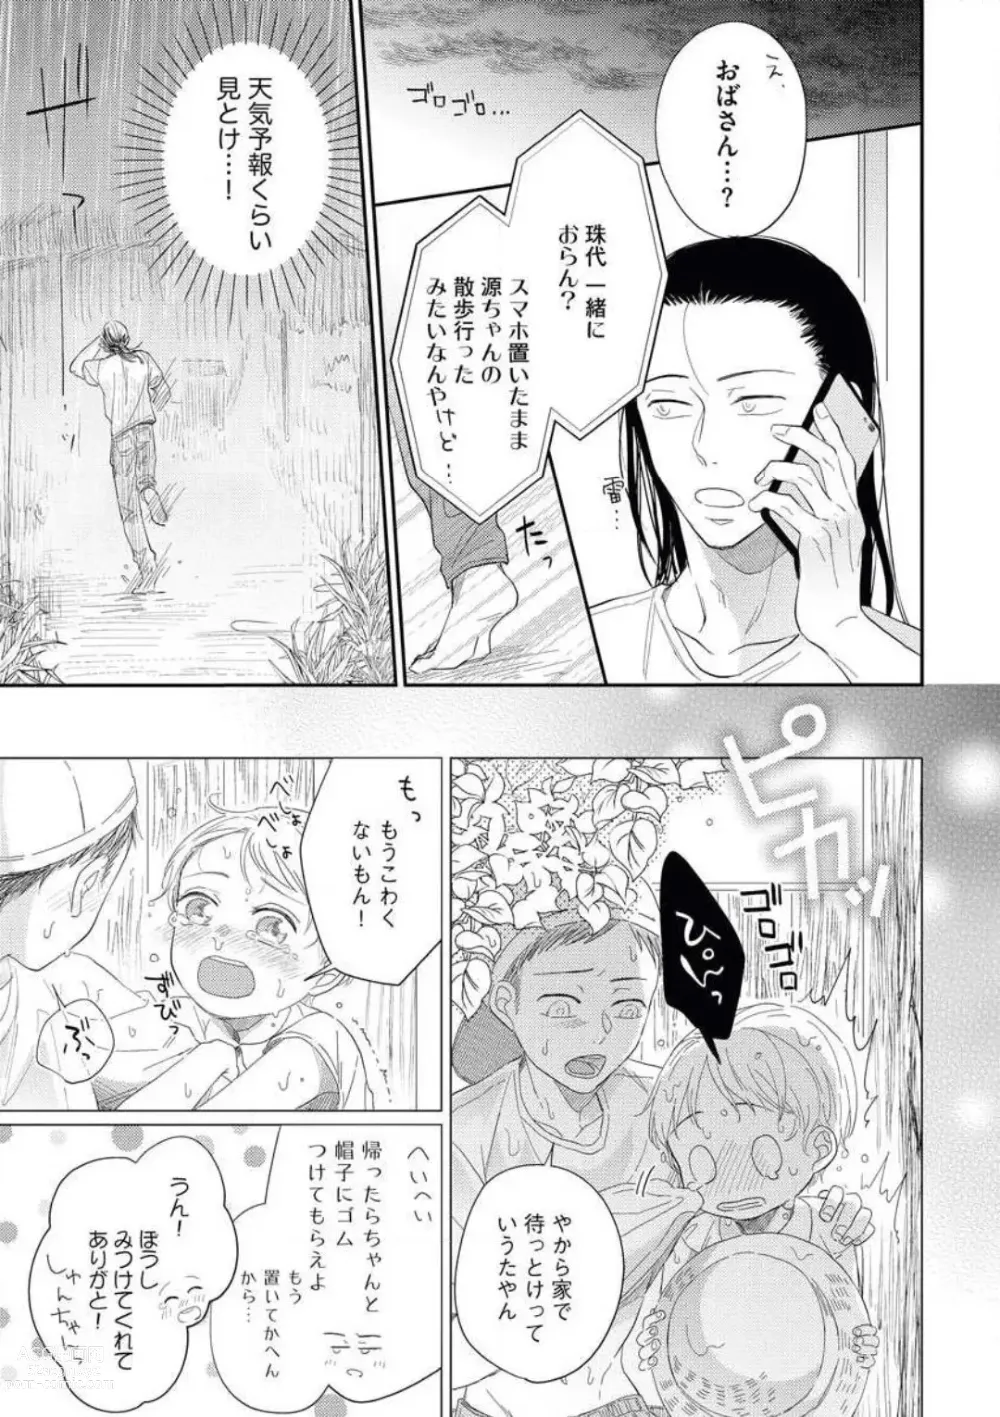 Page 23 of manga Zutto Matteru' Osananajimi to Gamandekinai Saikai Etchi